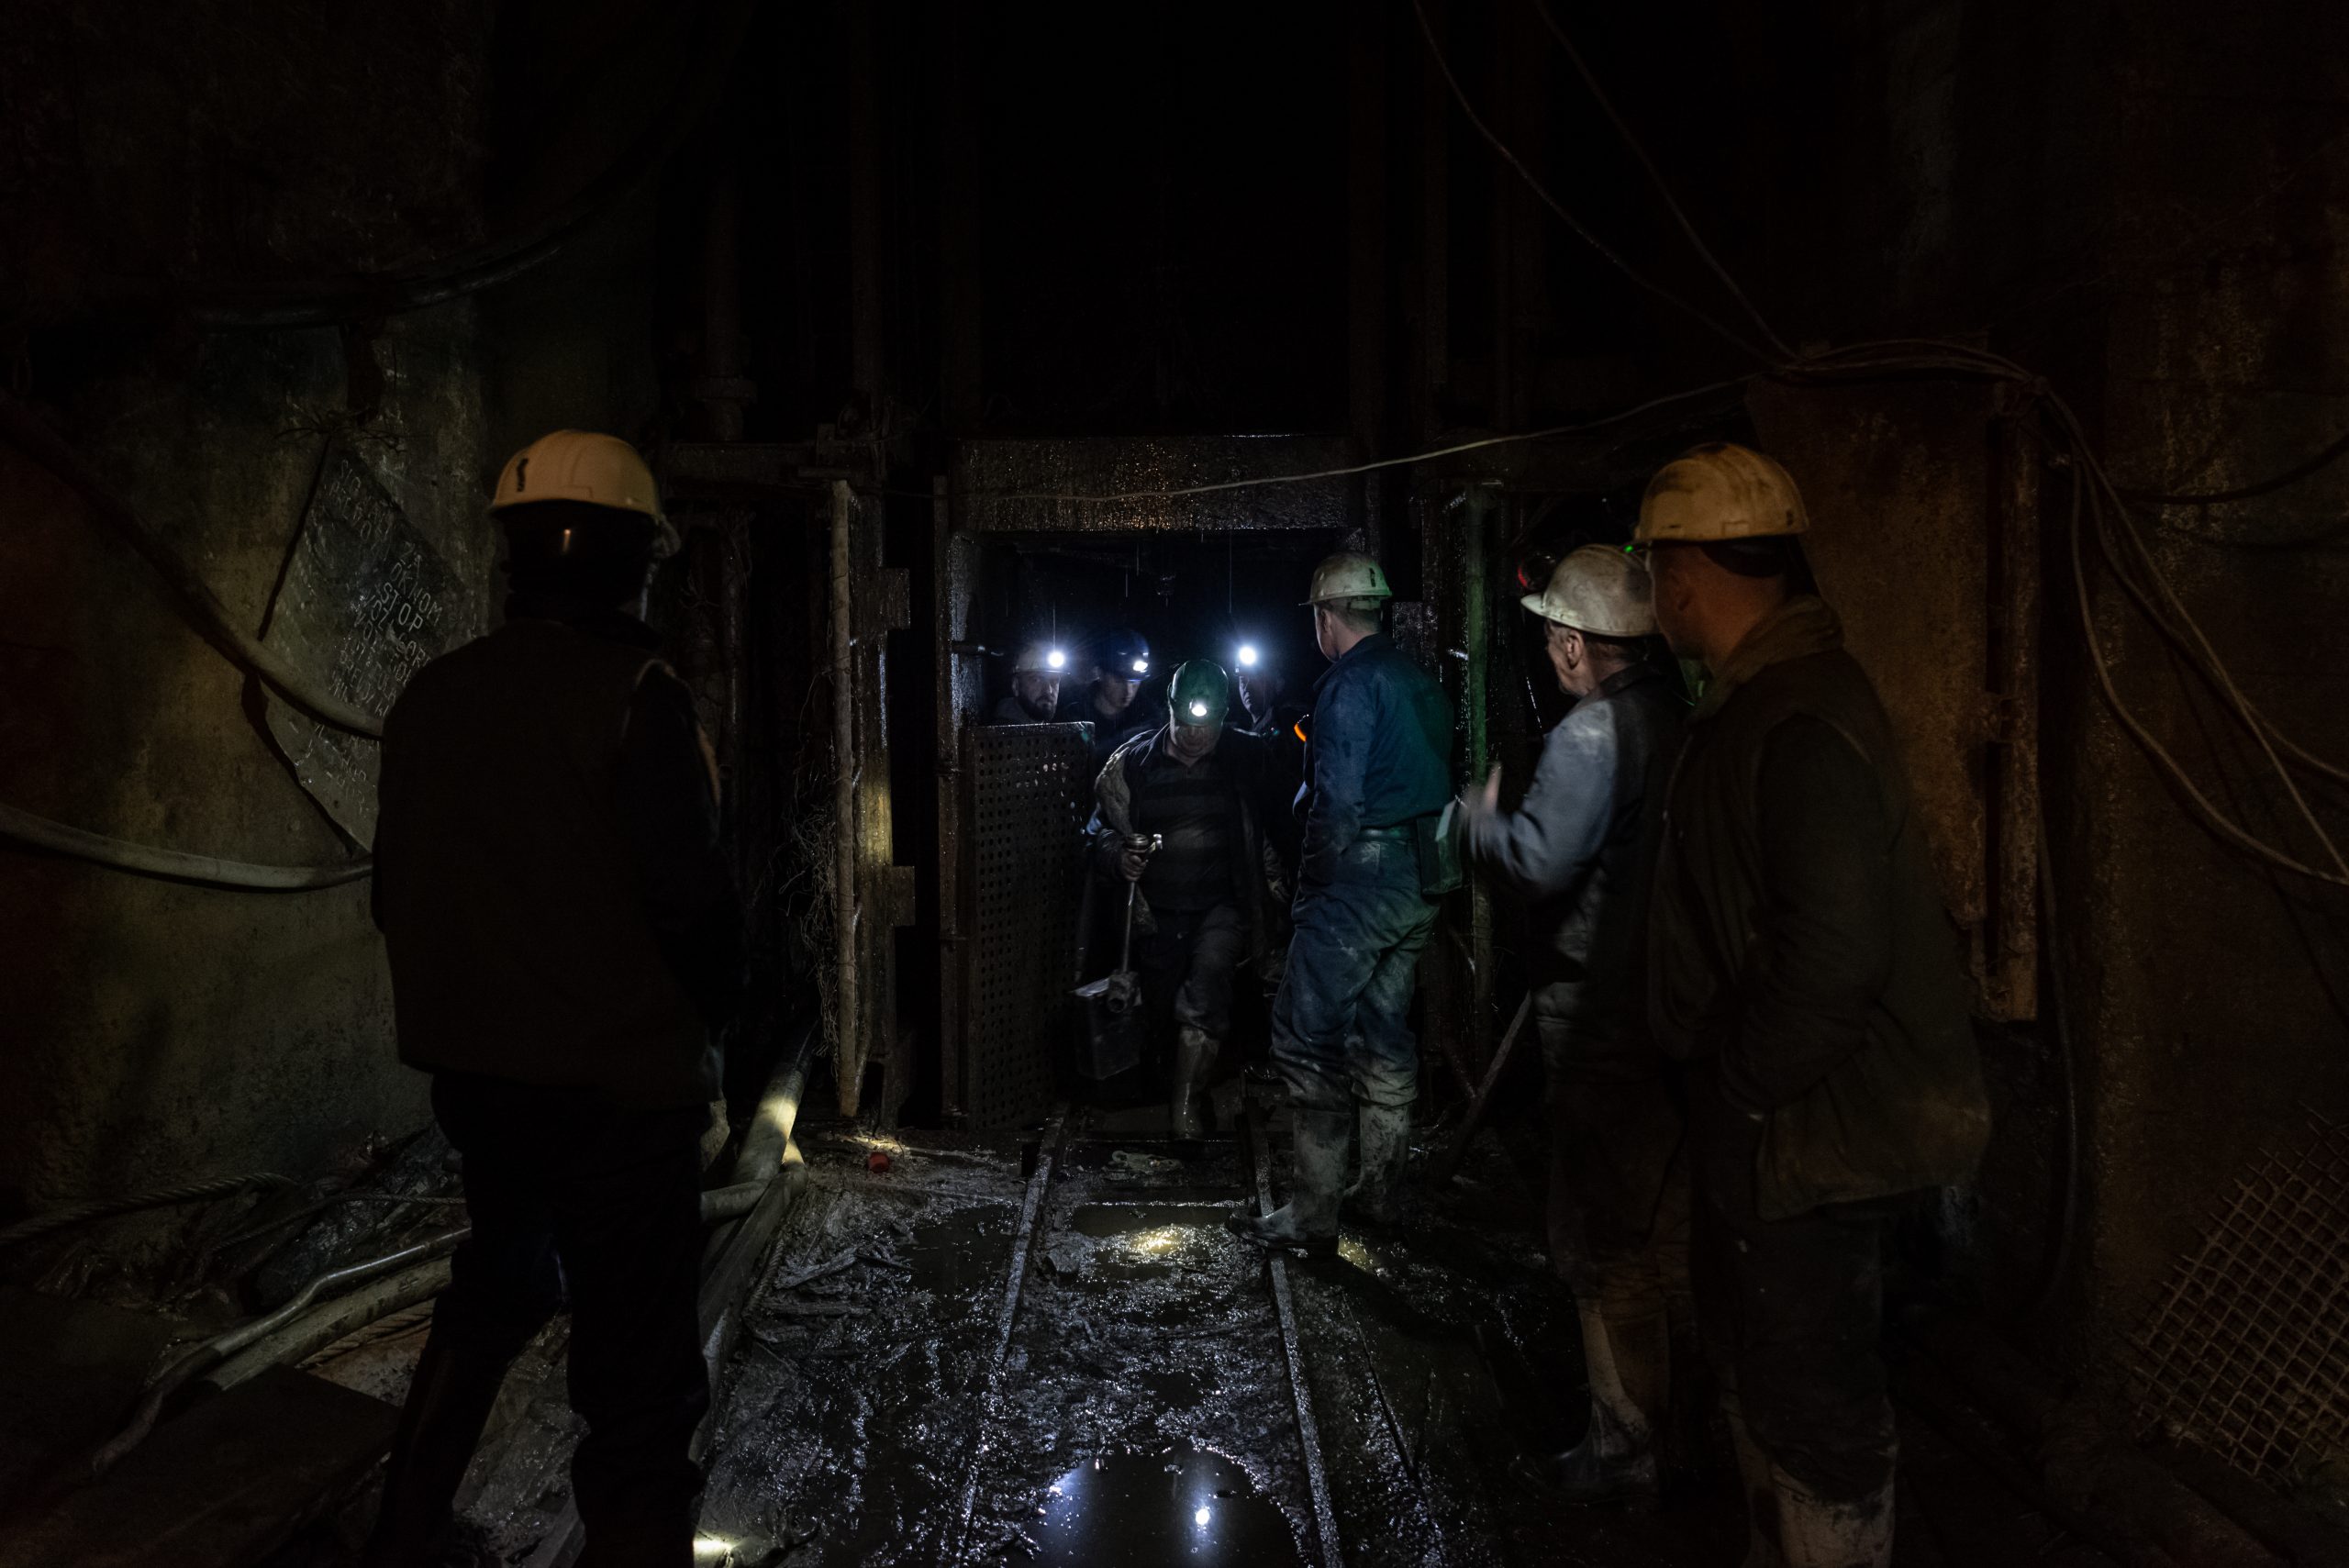 Minatorët në fund të një ndërrimi në galeritë në minierën e Trepçës në Crnac.